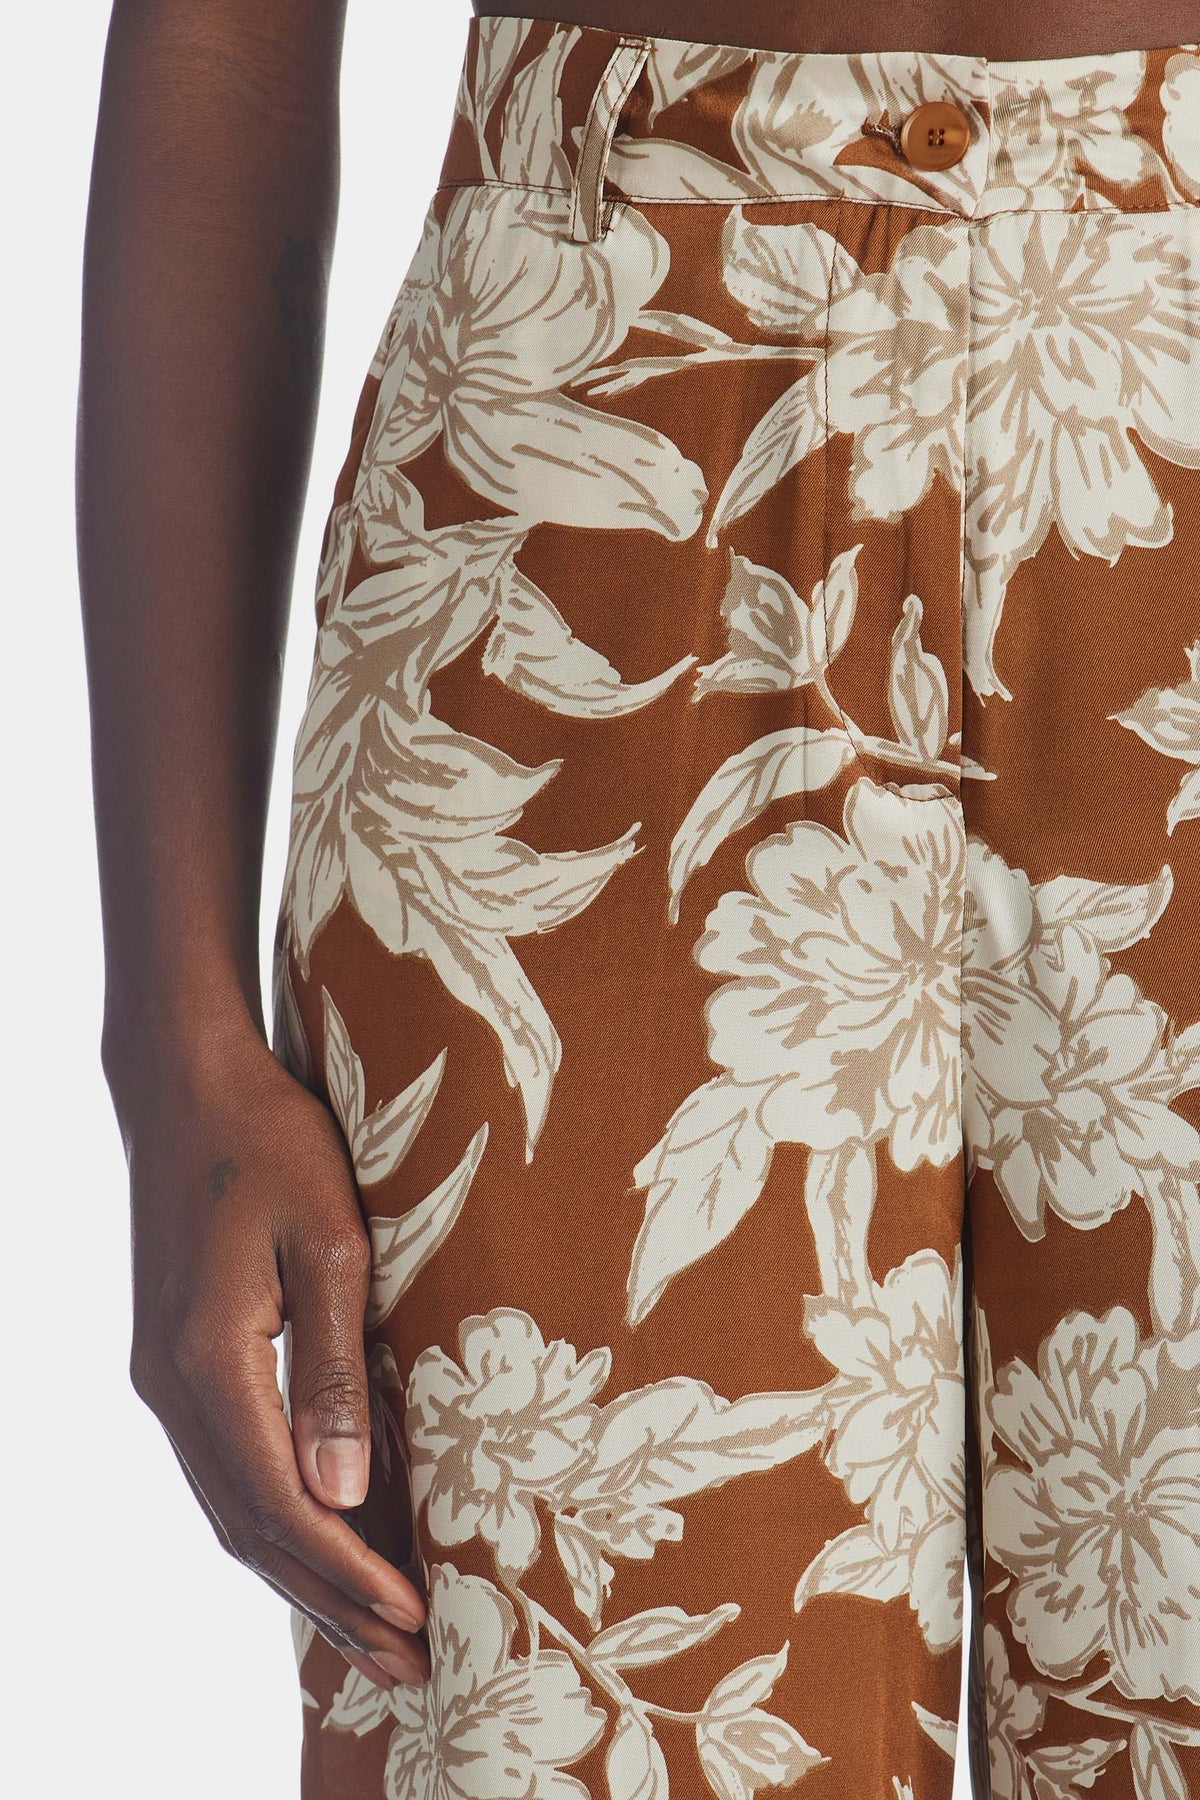 Angelia High Rise Floral Trousers Brown, Bottoms by En Saison | LIT Boutique